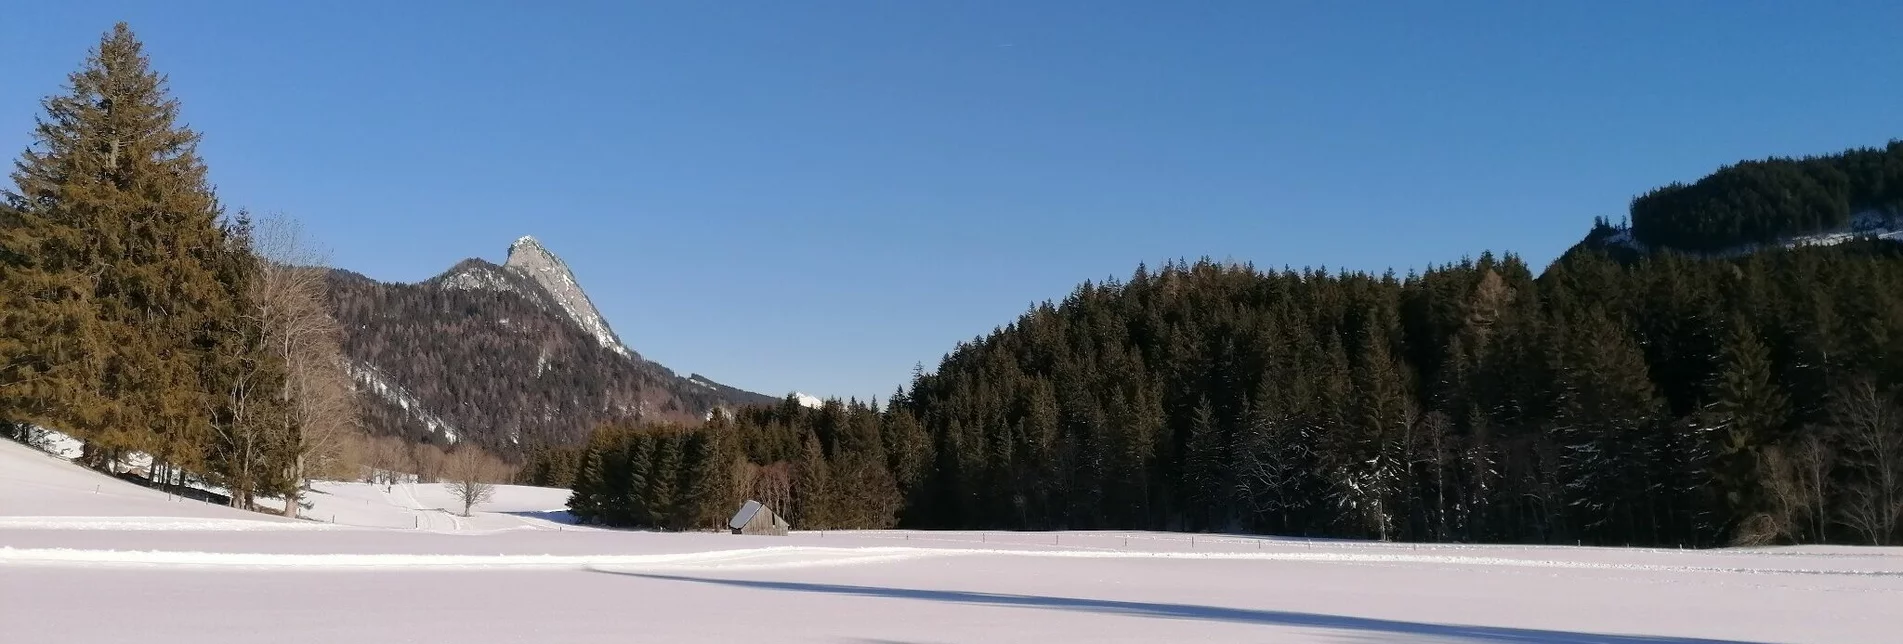 Ski nordic skating Spechtensee XC Trail - Touren-Impression #1 | © Erlebnisregion Schladming-Dachstein